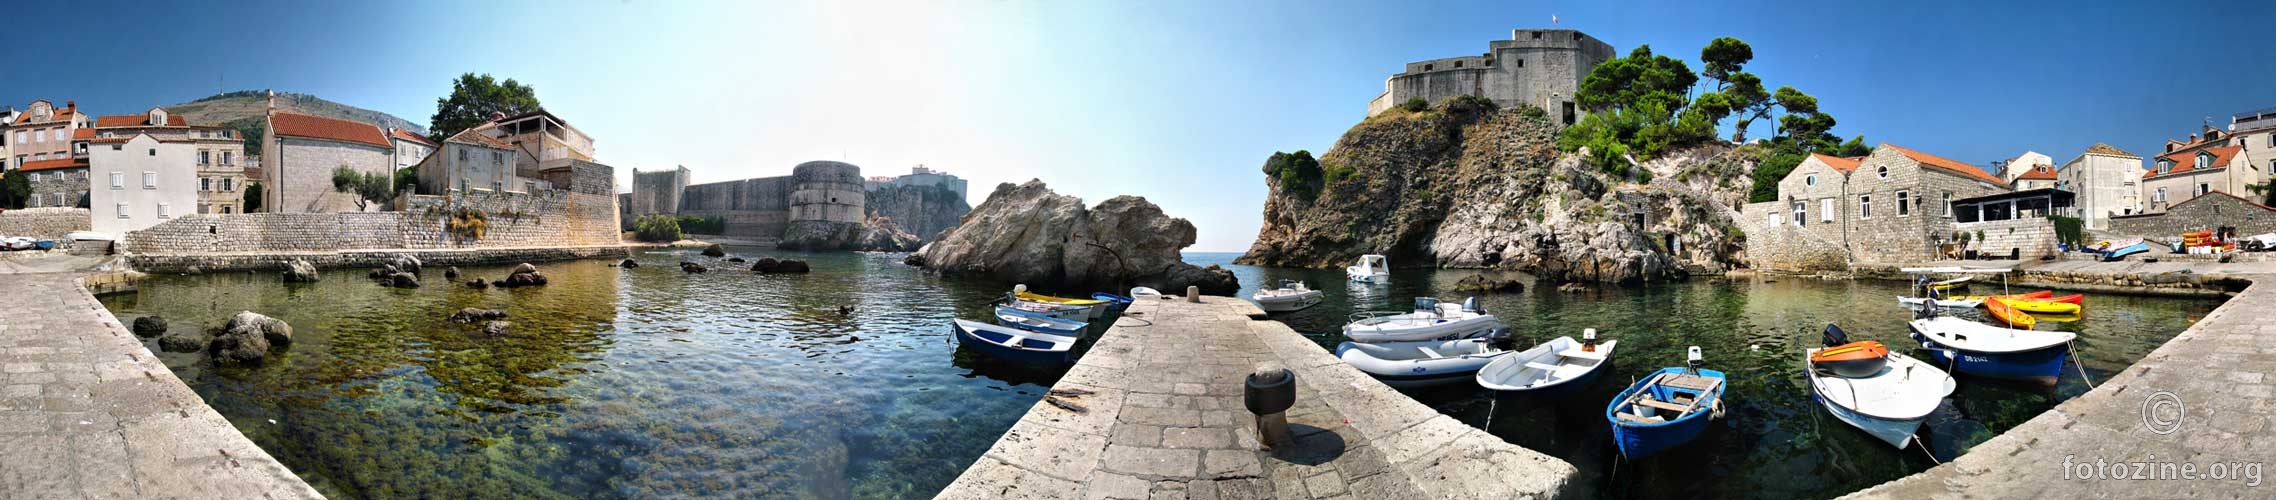 Dubrovnik podno Lovrijenca